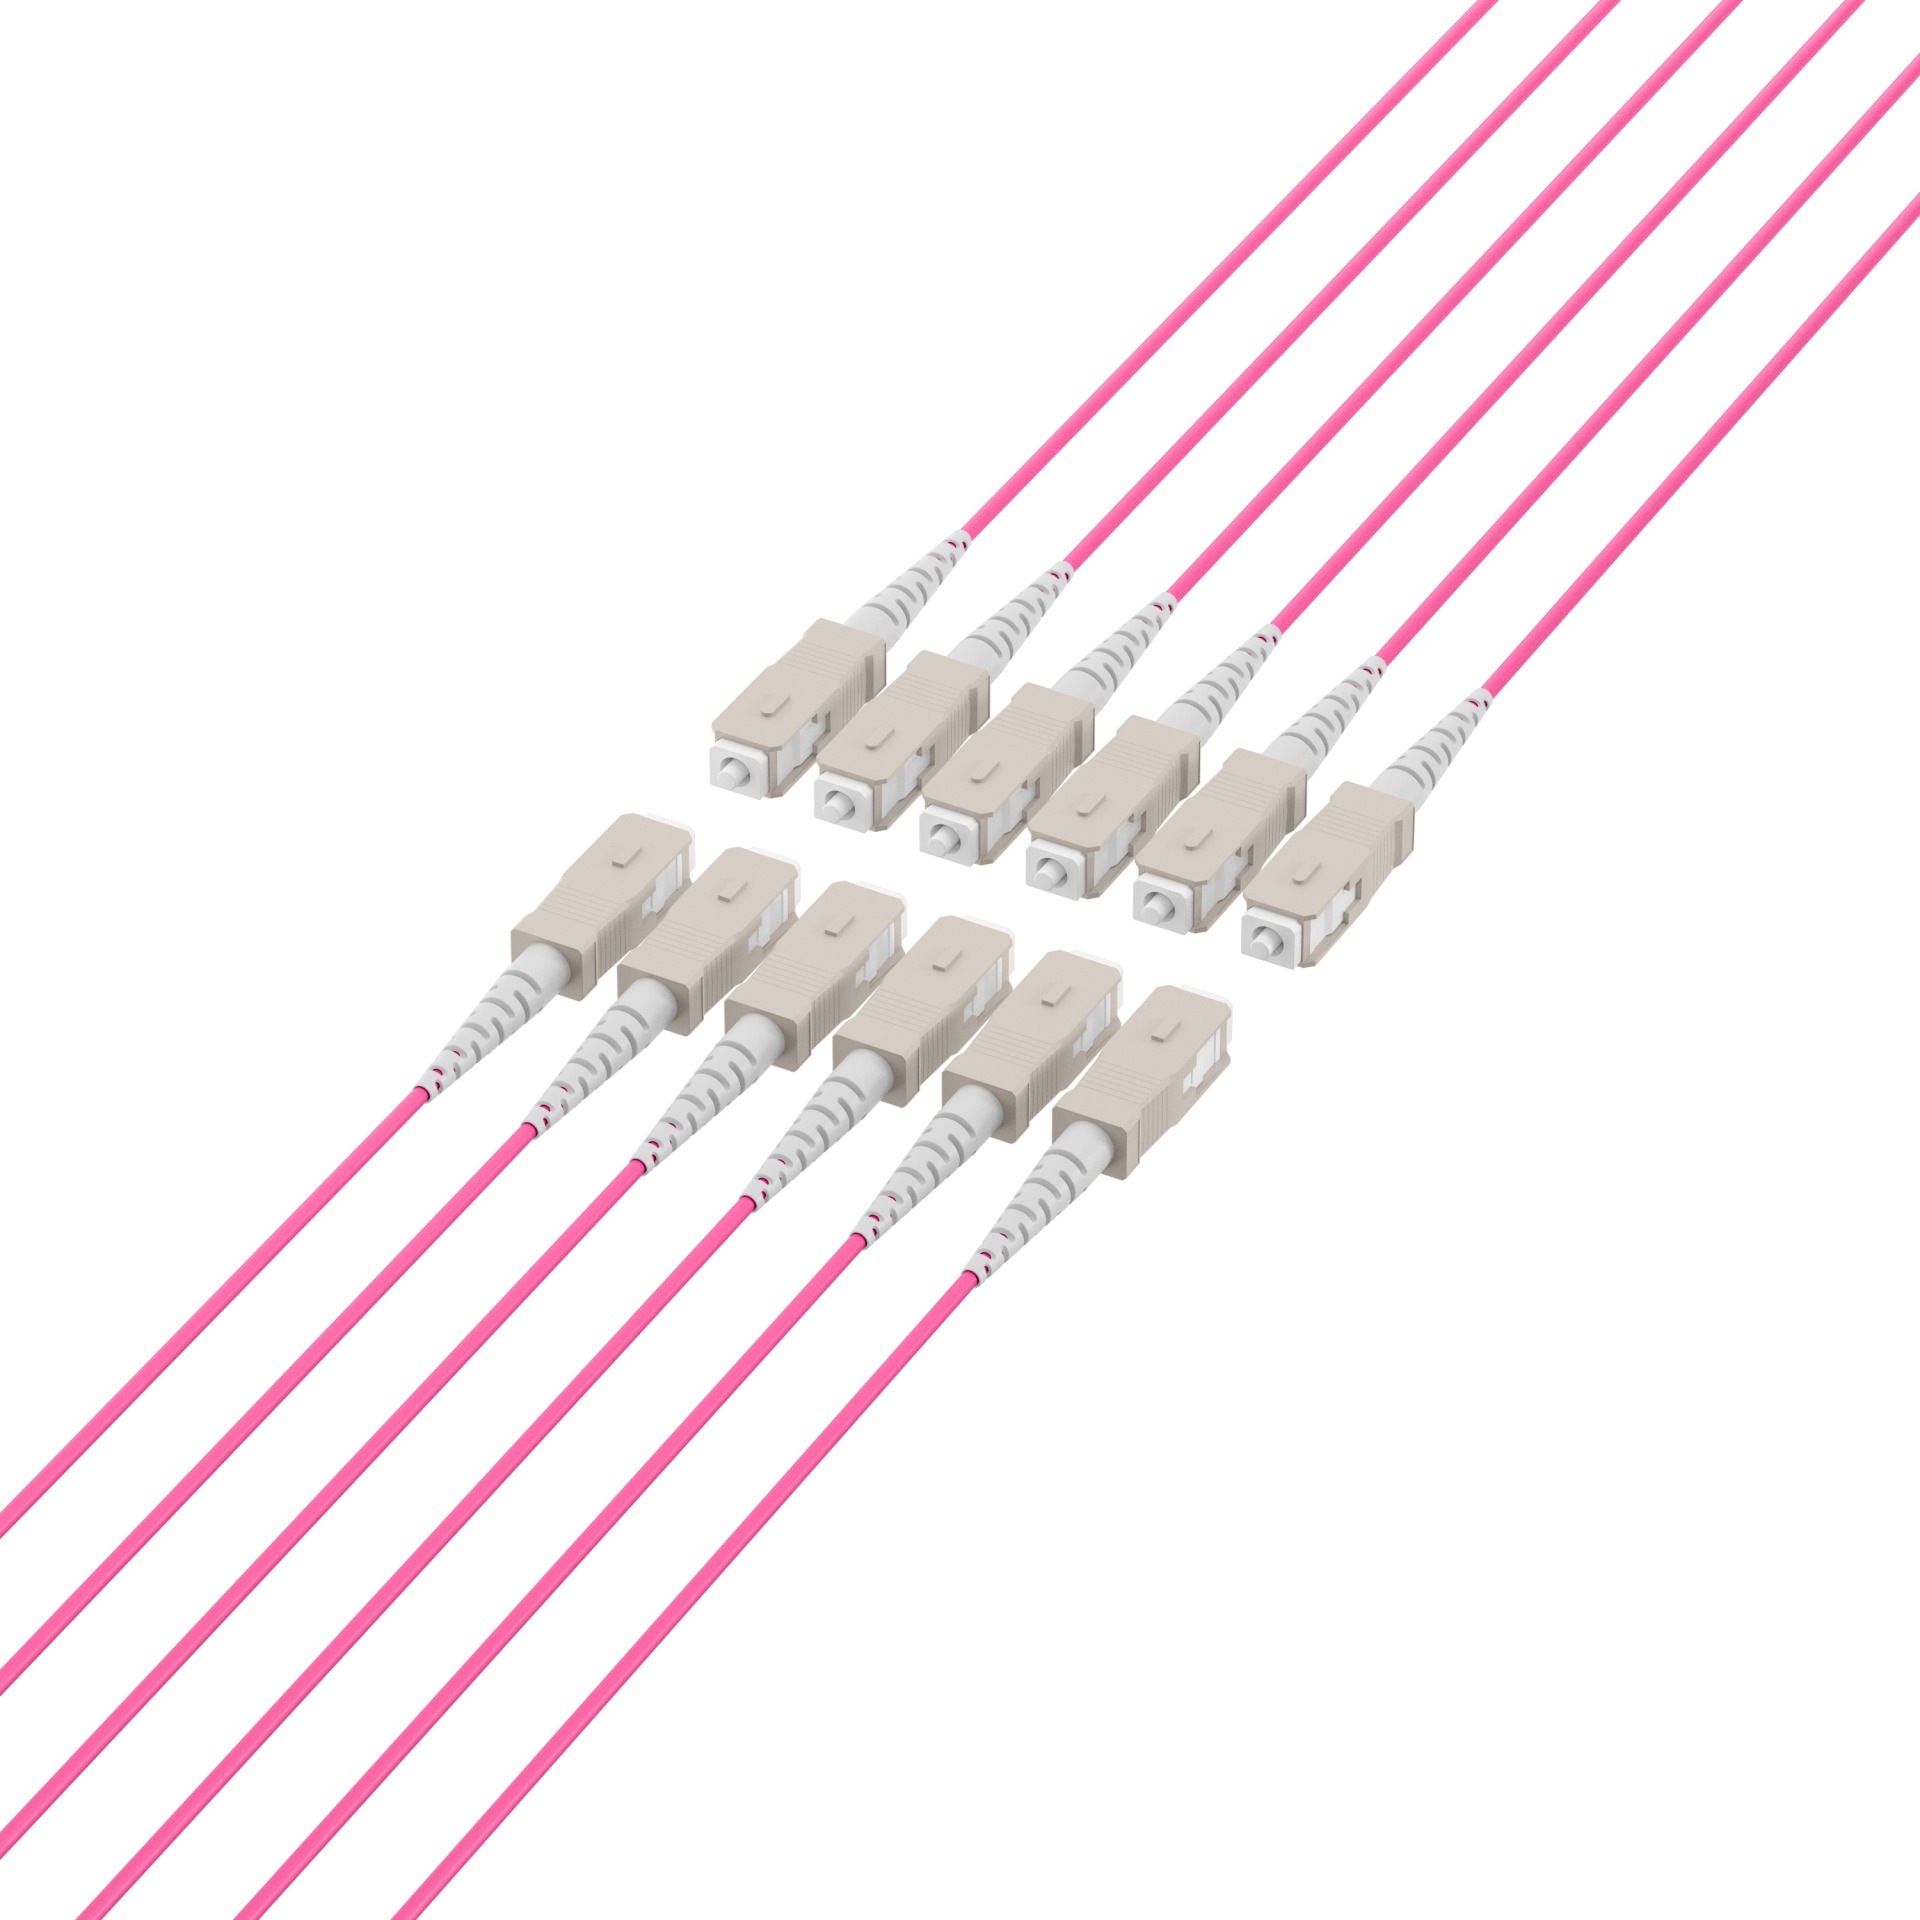 Trunk cable U-DQ(ZN)BH OM4 12G (1x12) SC-SC,130m Dca LSZH